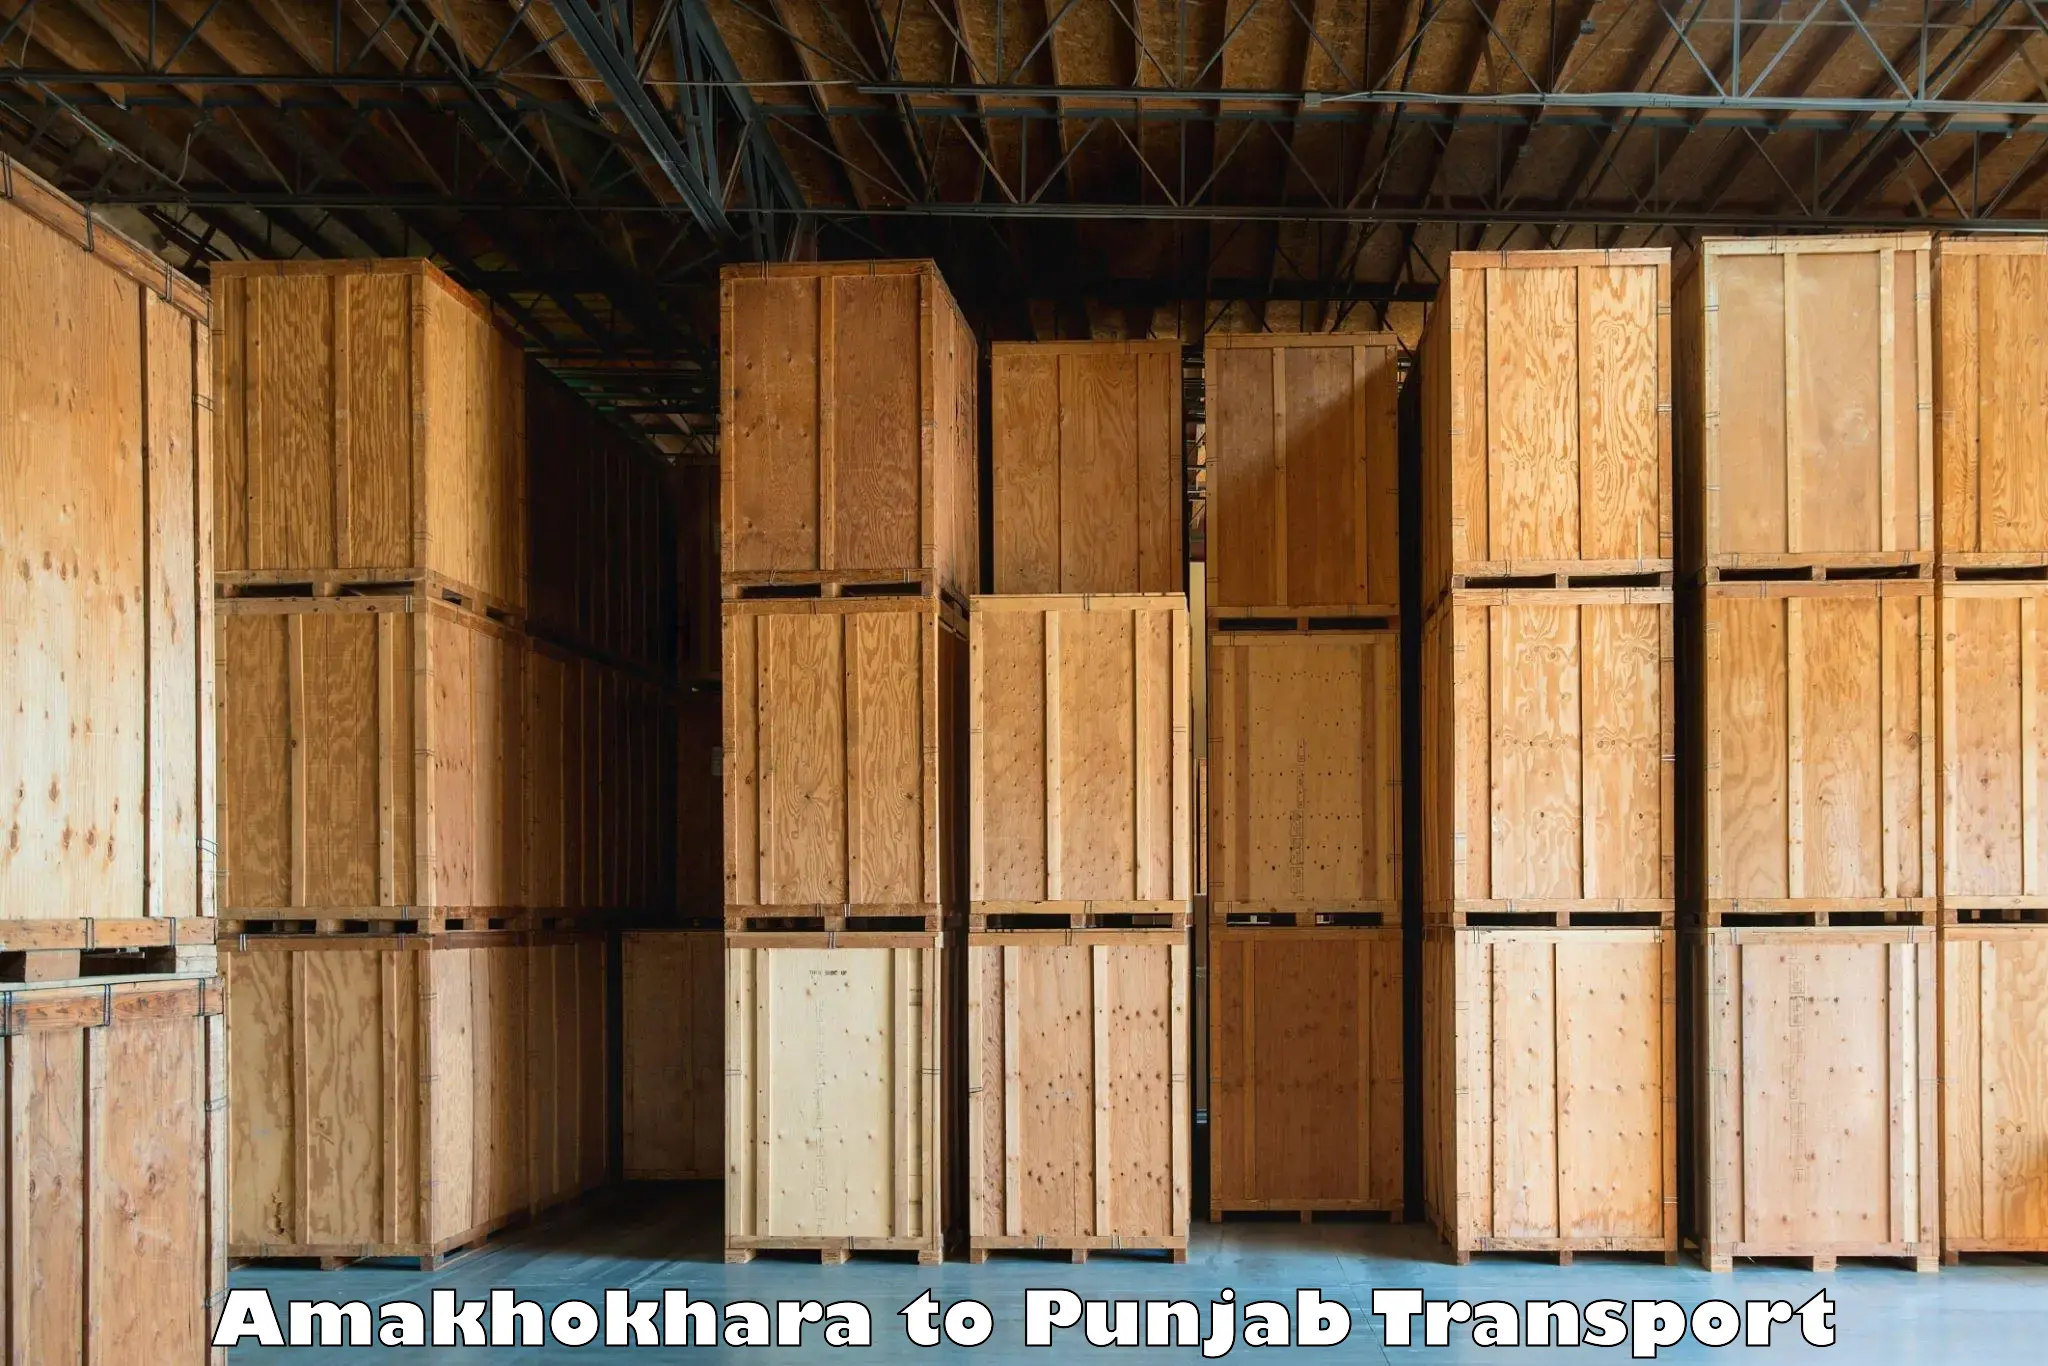 Land transport services Amakhokhara to Ludhiana